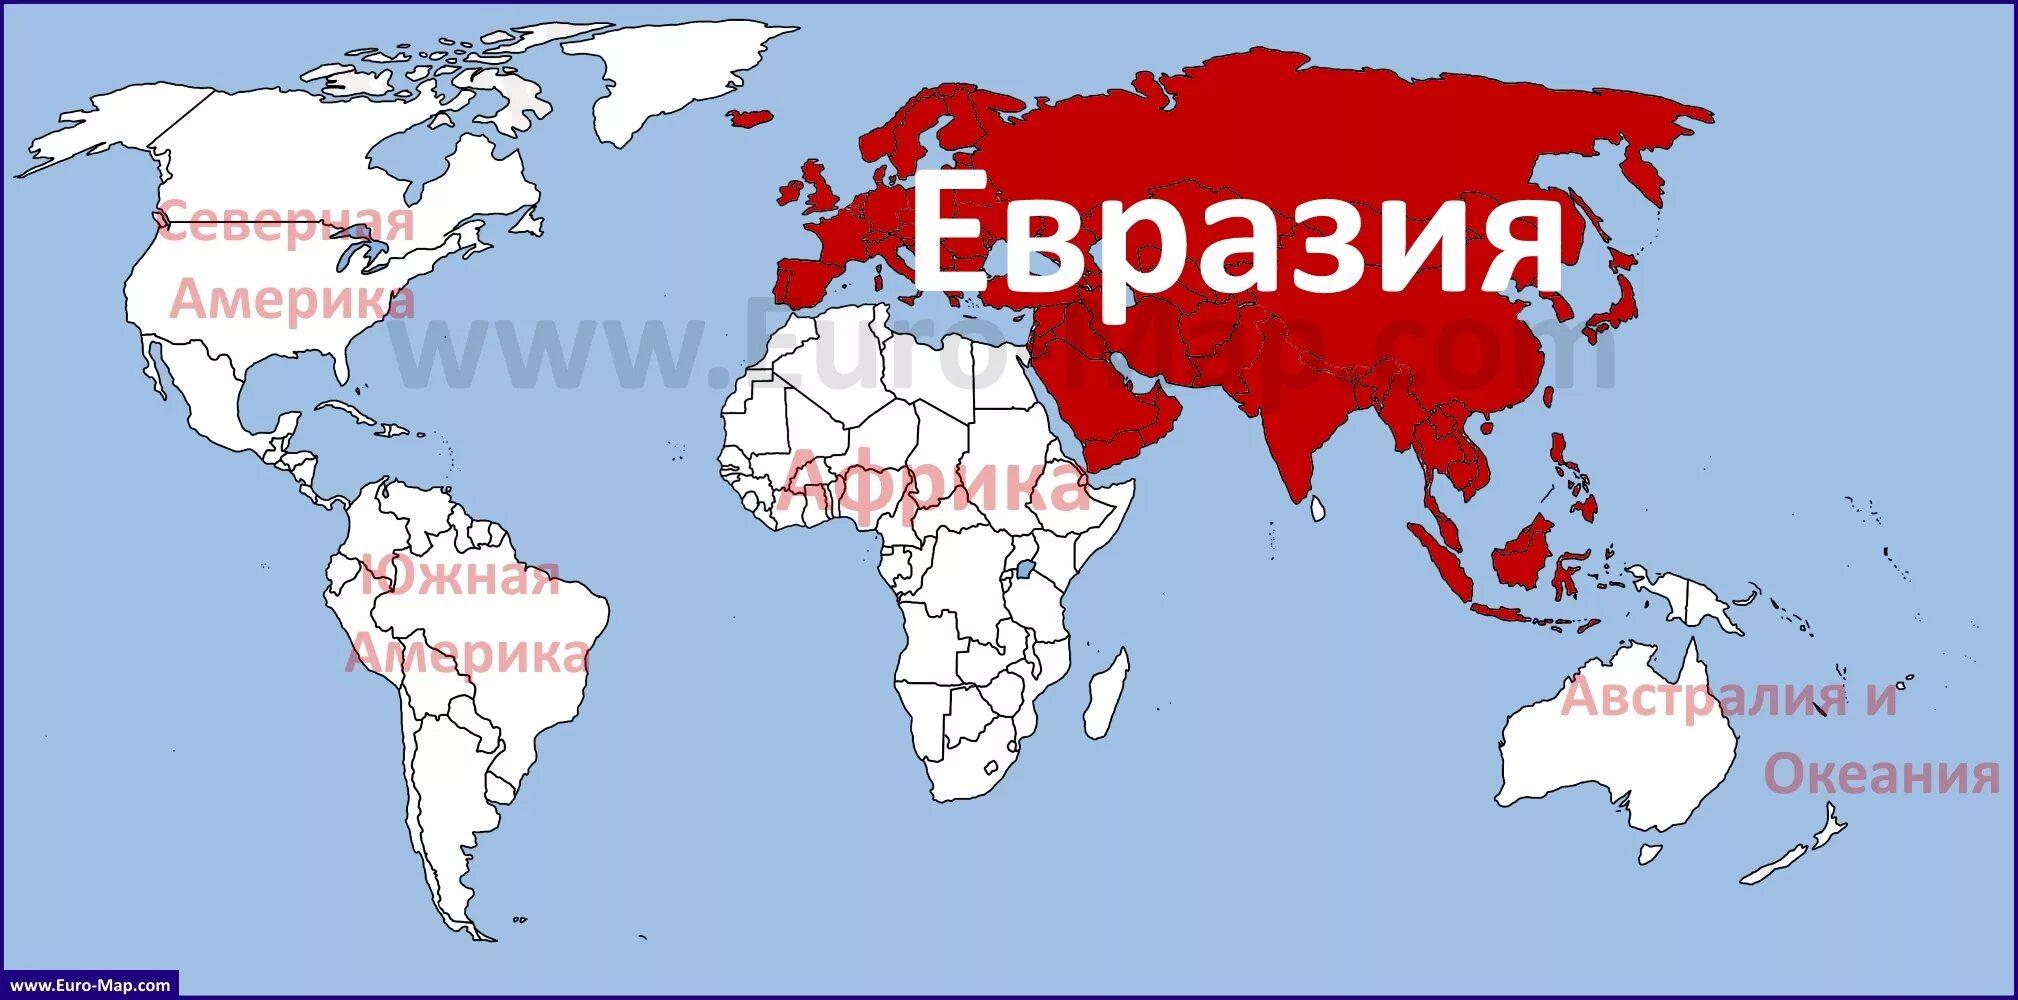 Покажи на карте где находится евразия